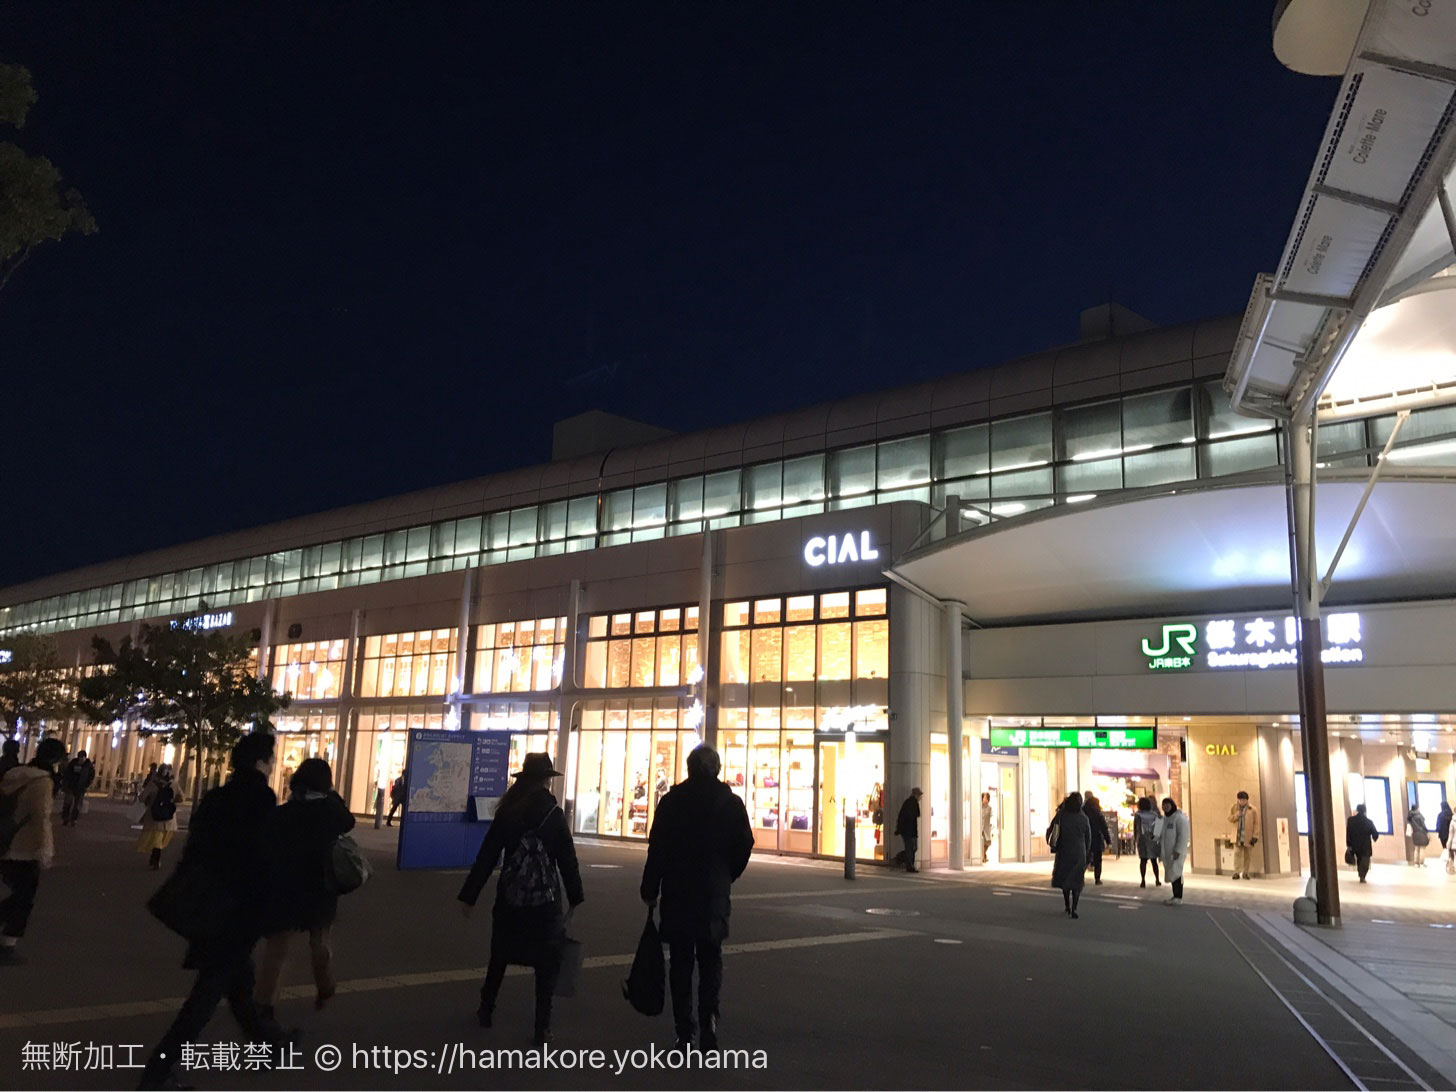 JR「桜木町駅」新改札口設置と複合ビル建設を発表 2020年度予定